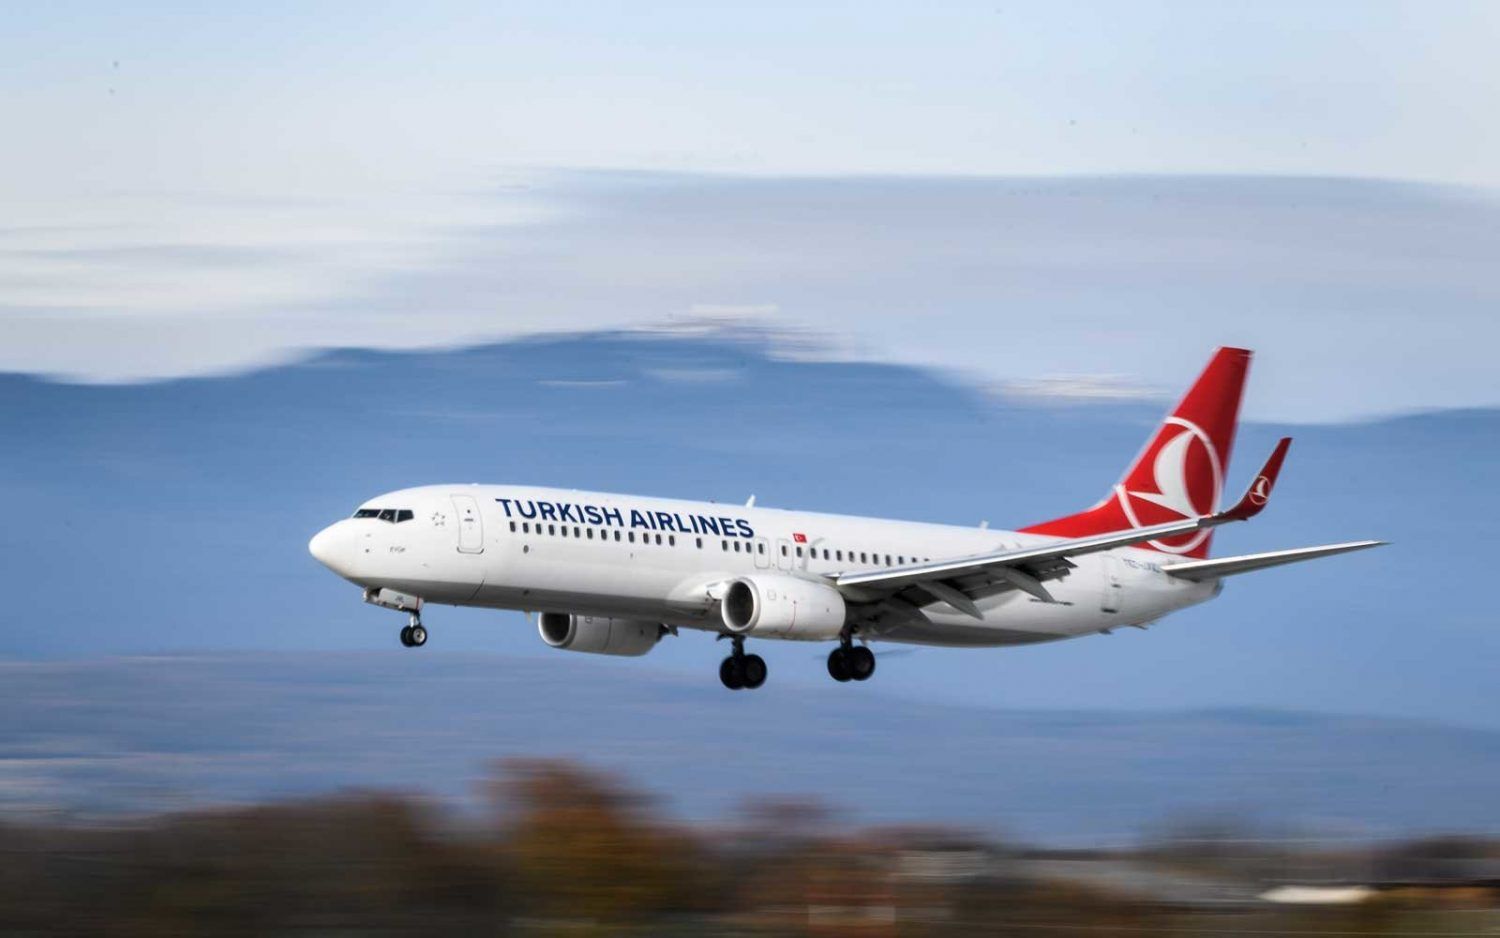 Turkish Airlines equipaje de mano: normas equipaje 2022- easyDest